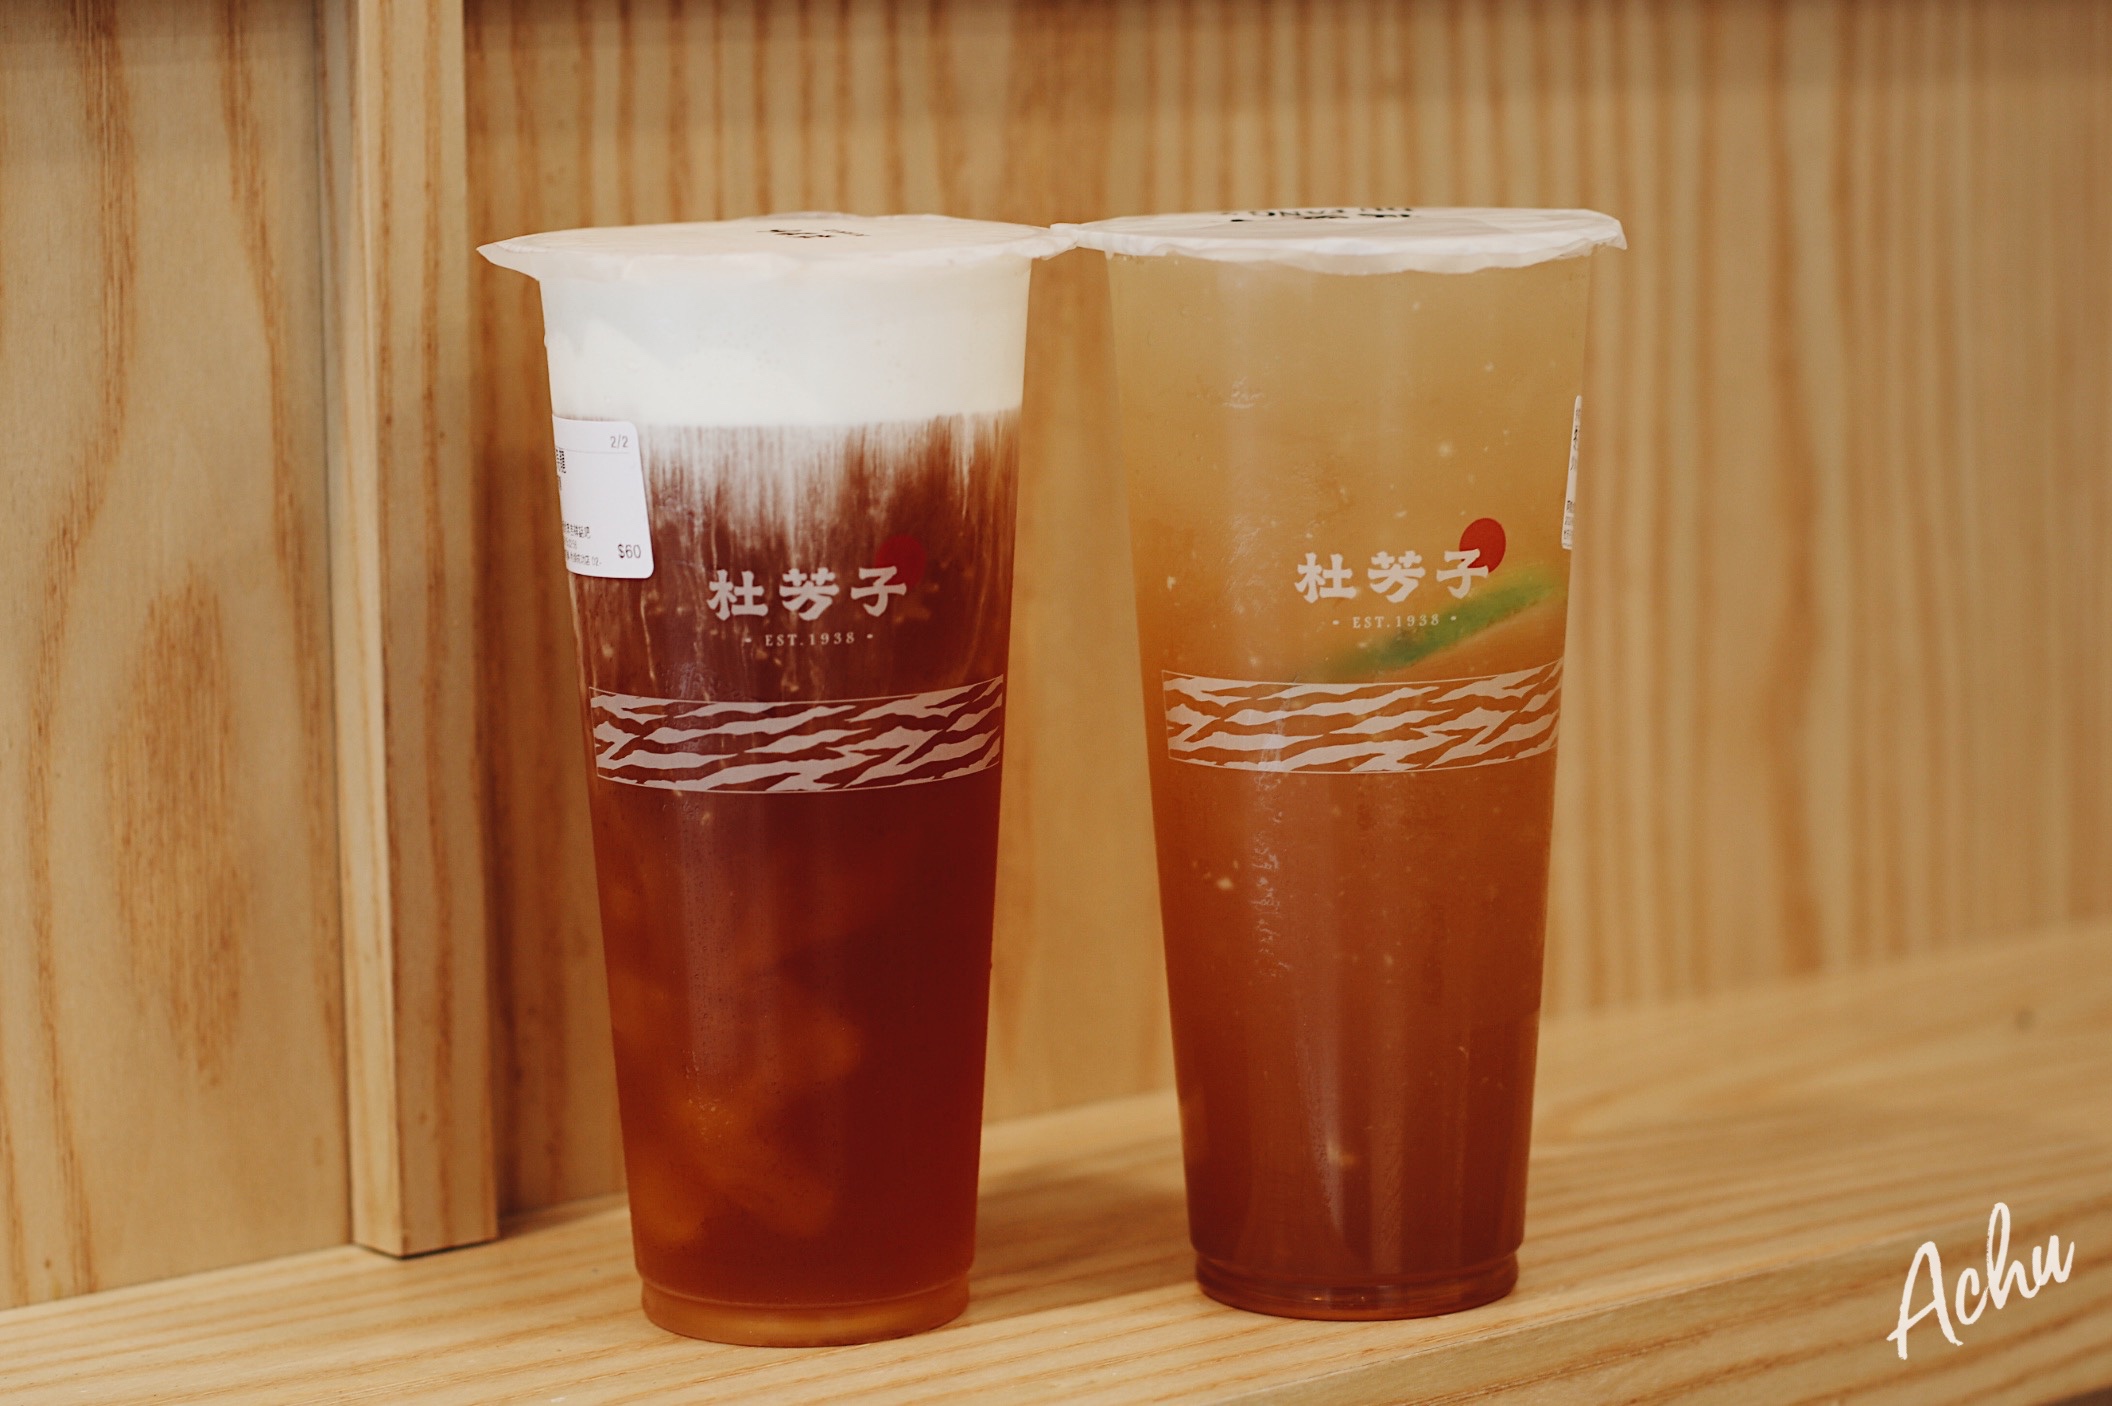 【飲料推薦】杜芳子古味茶舖 回憶中的傳承者 推薦烏龍鮮奶凍 (菜單) @Achu的日常